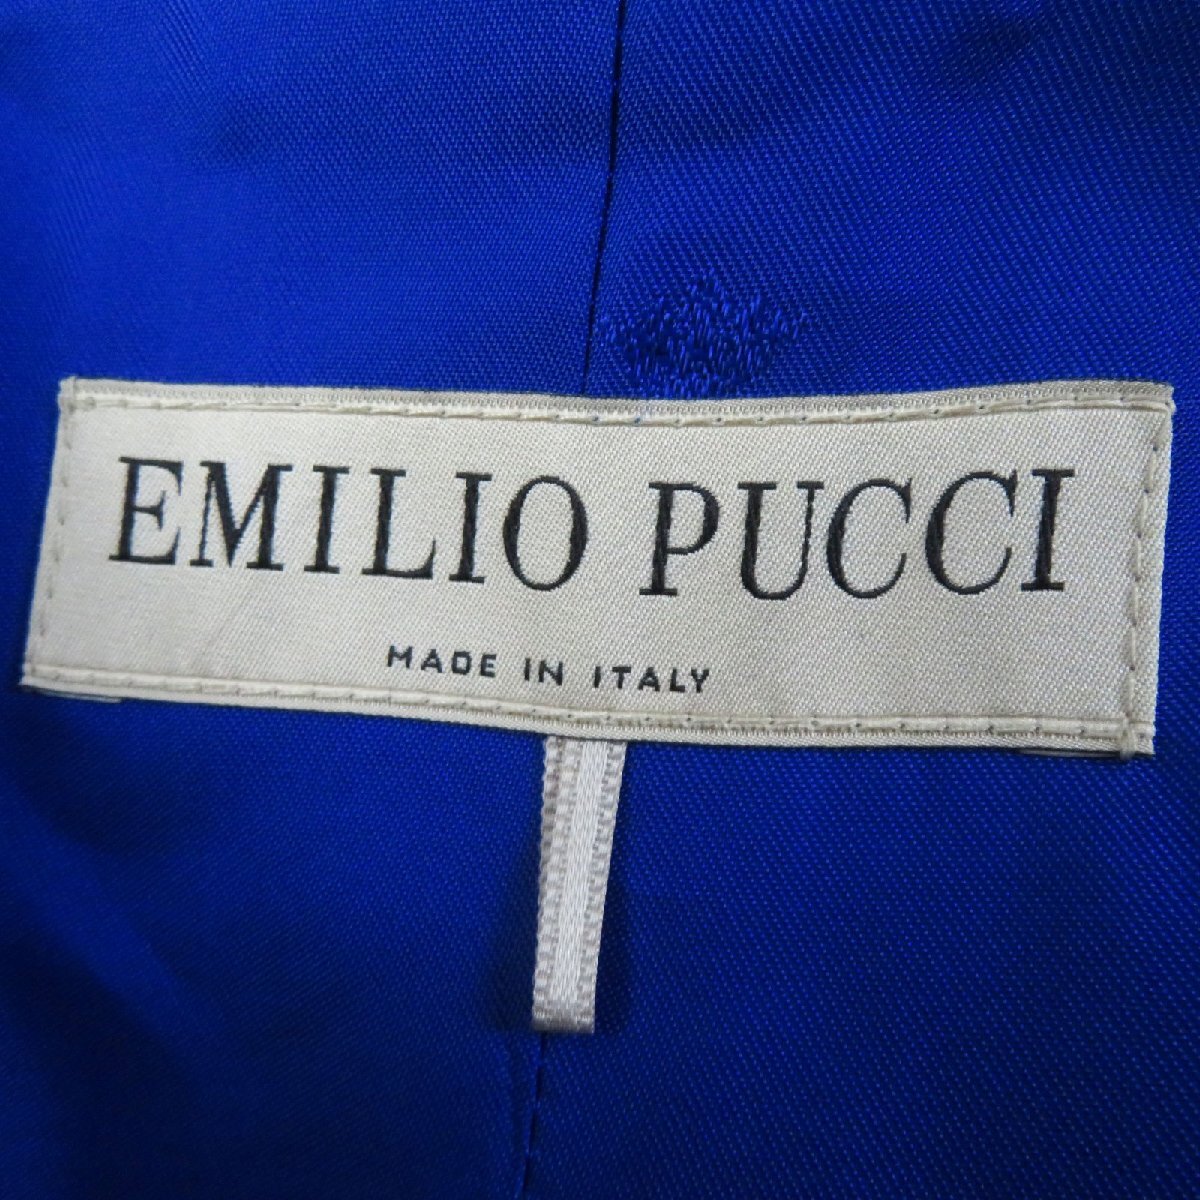  не использовался товар *Emilio Pucci Emilio Pucci 57RA30va- Gin шерсть прекрасный Silhouette Пальто Честерфилд голубой 38 сделано в Италии стандартный товар женский 